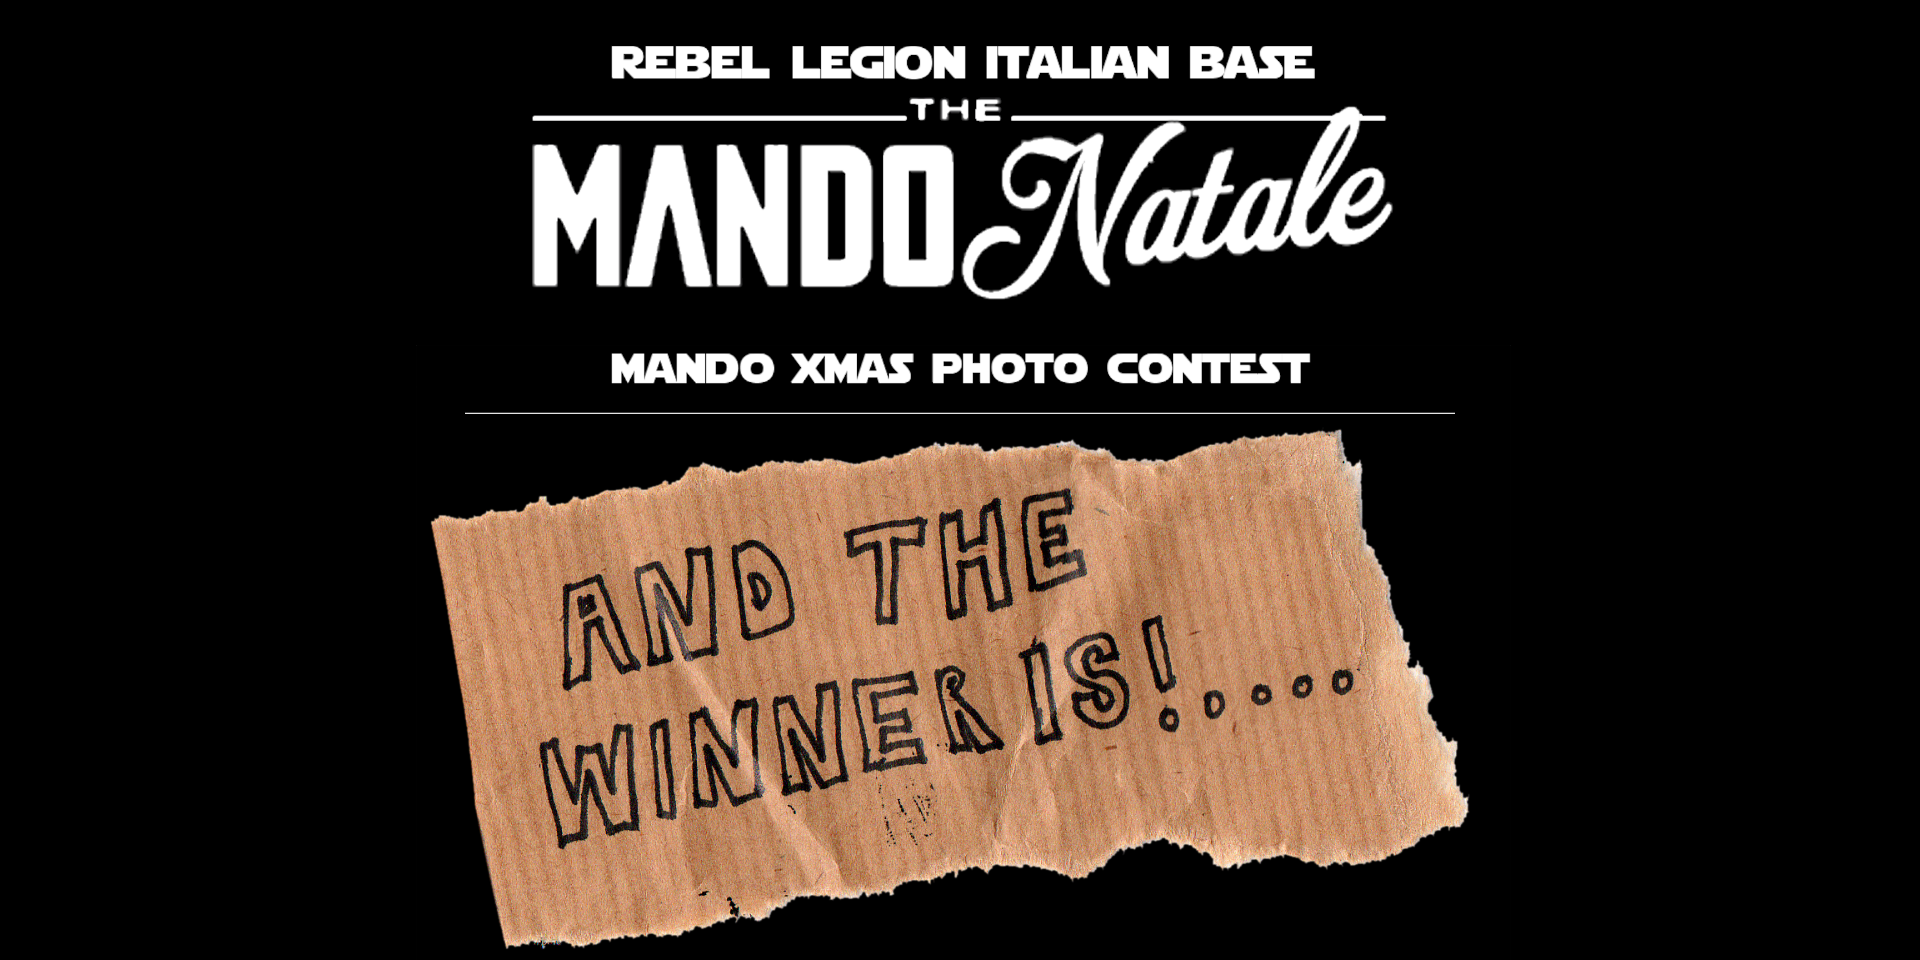 MandoNatale Photo Contest: Il Vincitore!